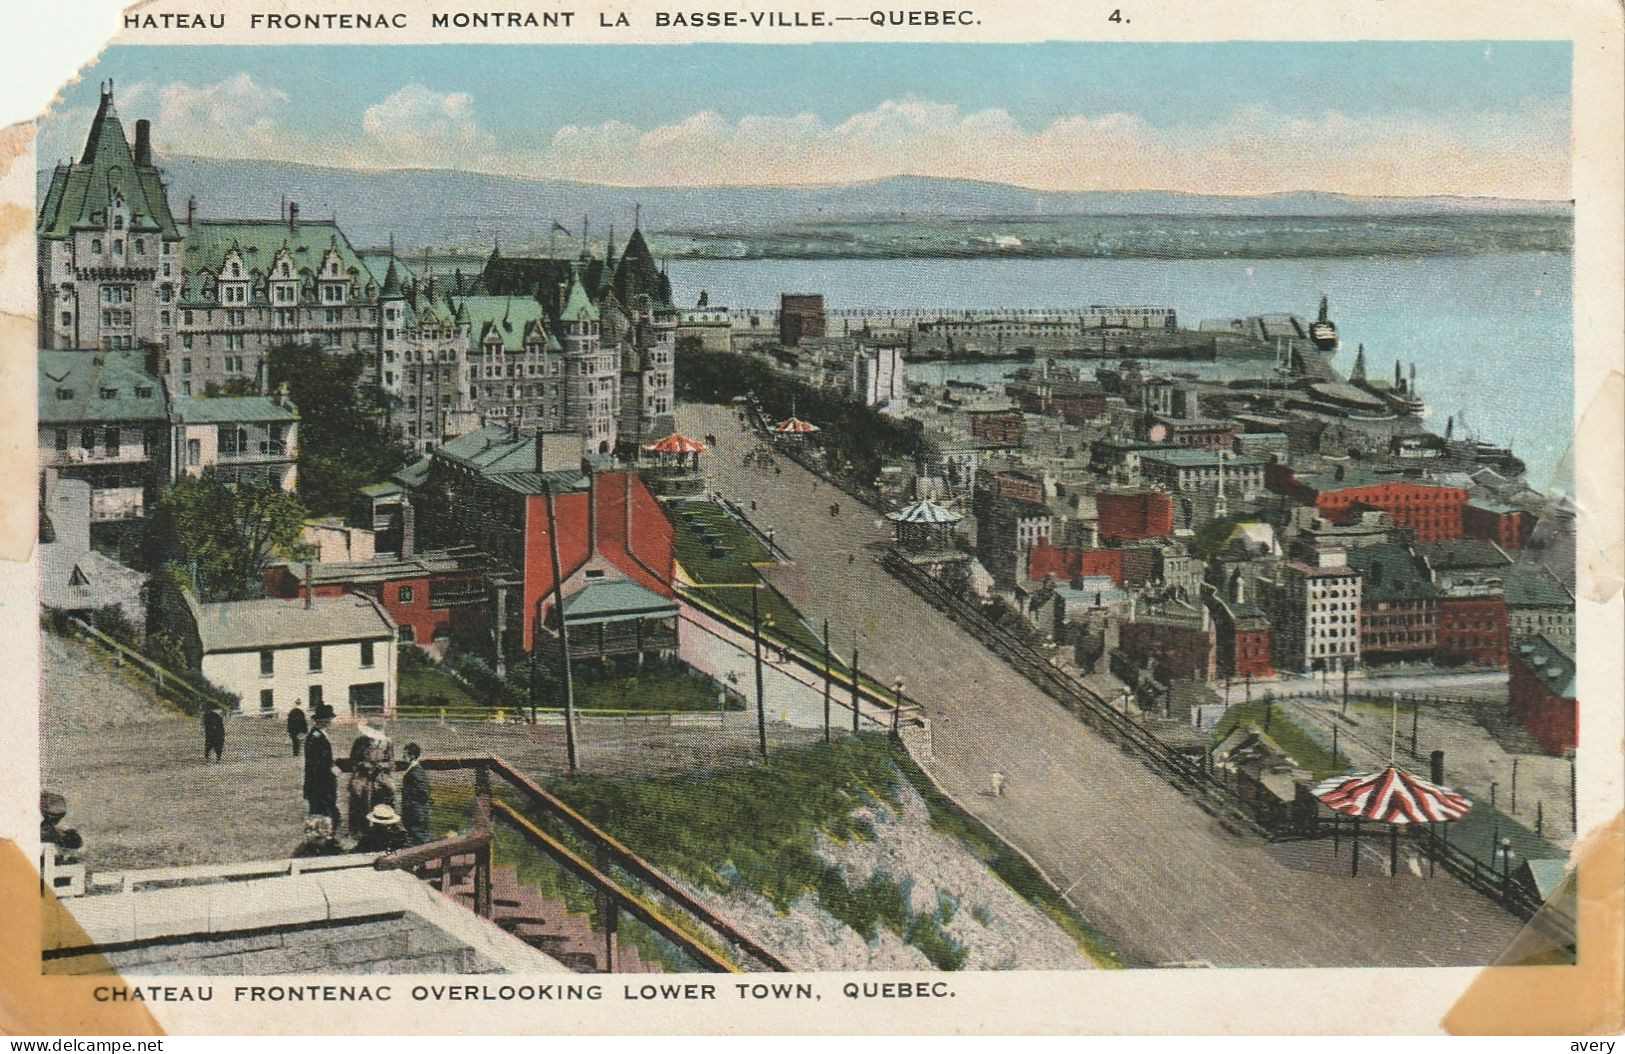 Chateau Frontenac Montrant La Basse-Ville.-Quebec Coin En Haut A Gauche Est Coupee - Québec - La Cité